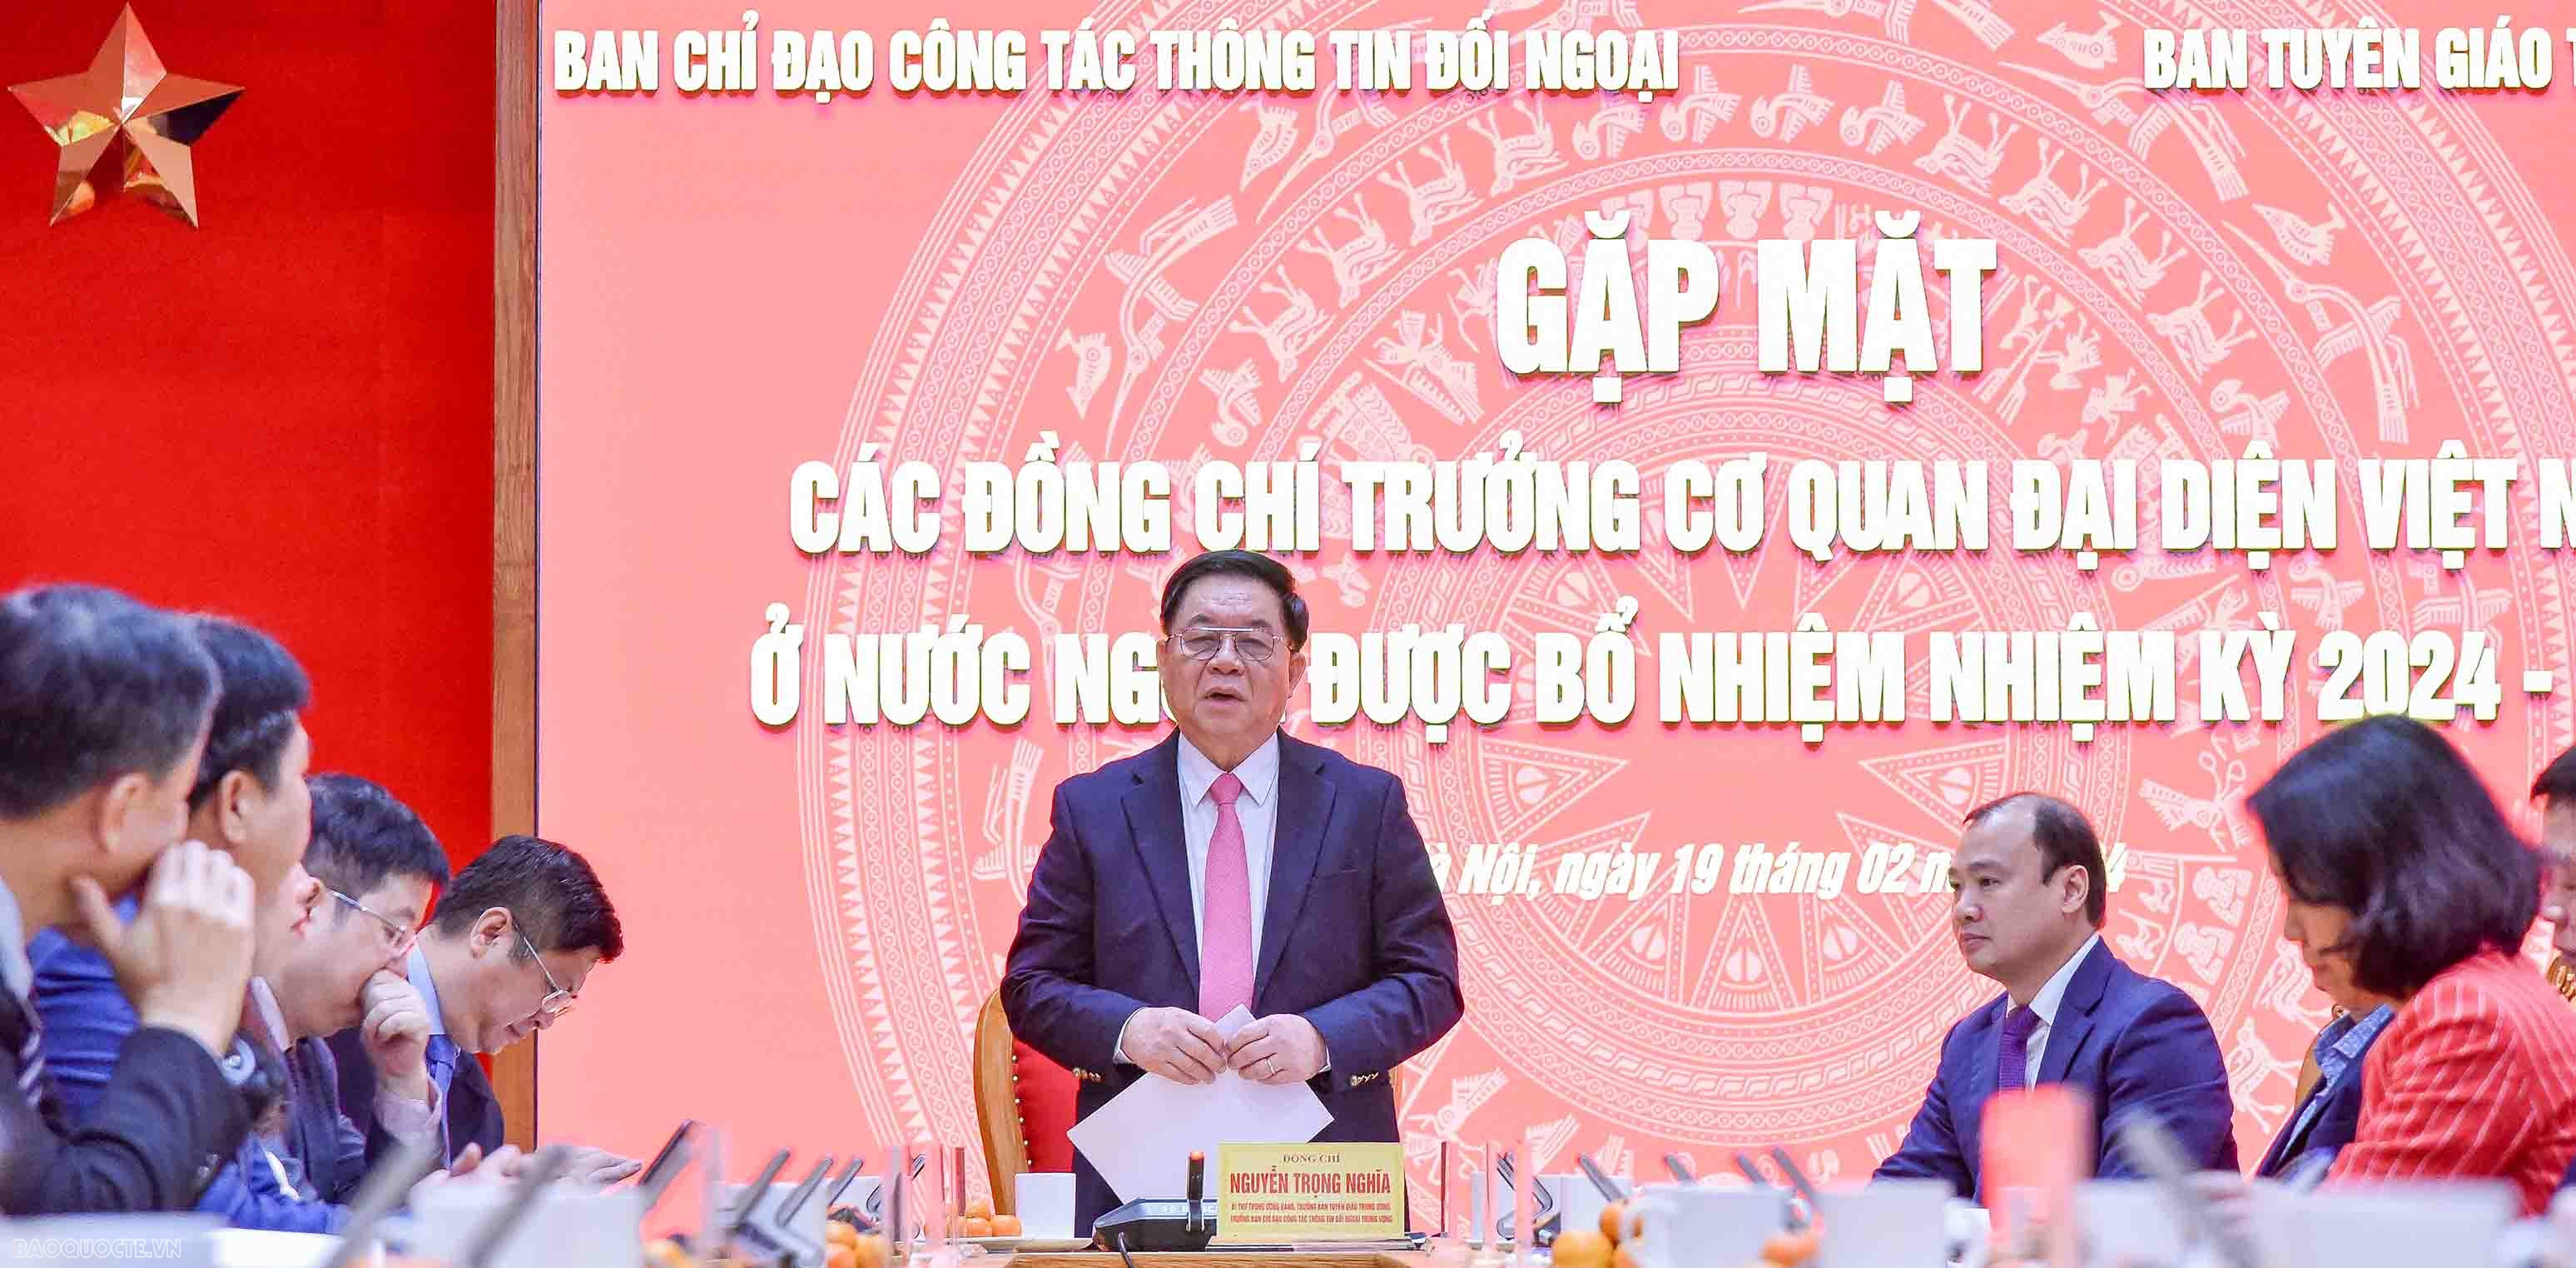 Trưởng Ban tuyên giáo trung ương gặp mặt trưởng các cơ quan đại diện Việt Nam ở nước ngoài